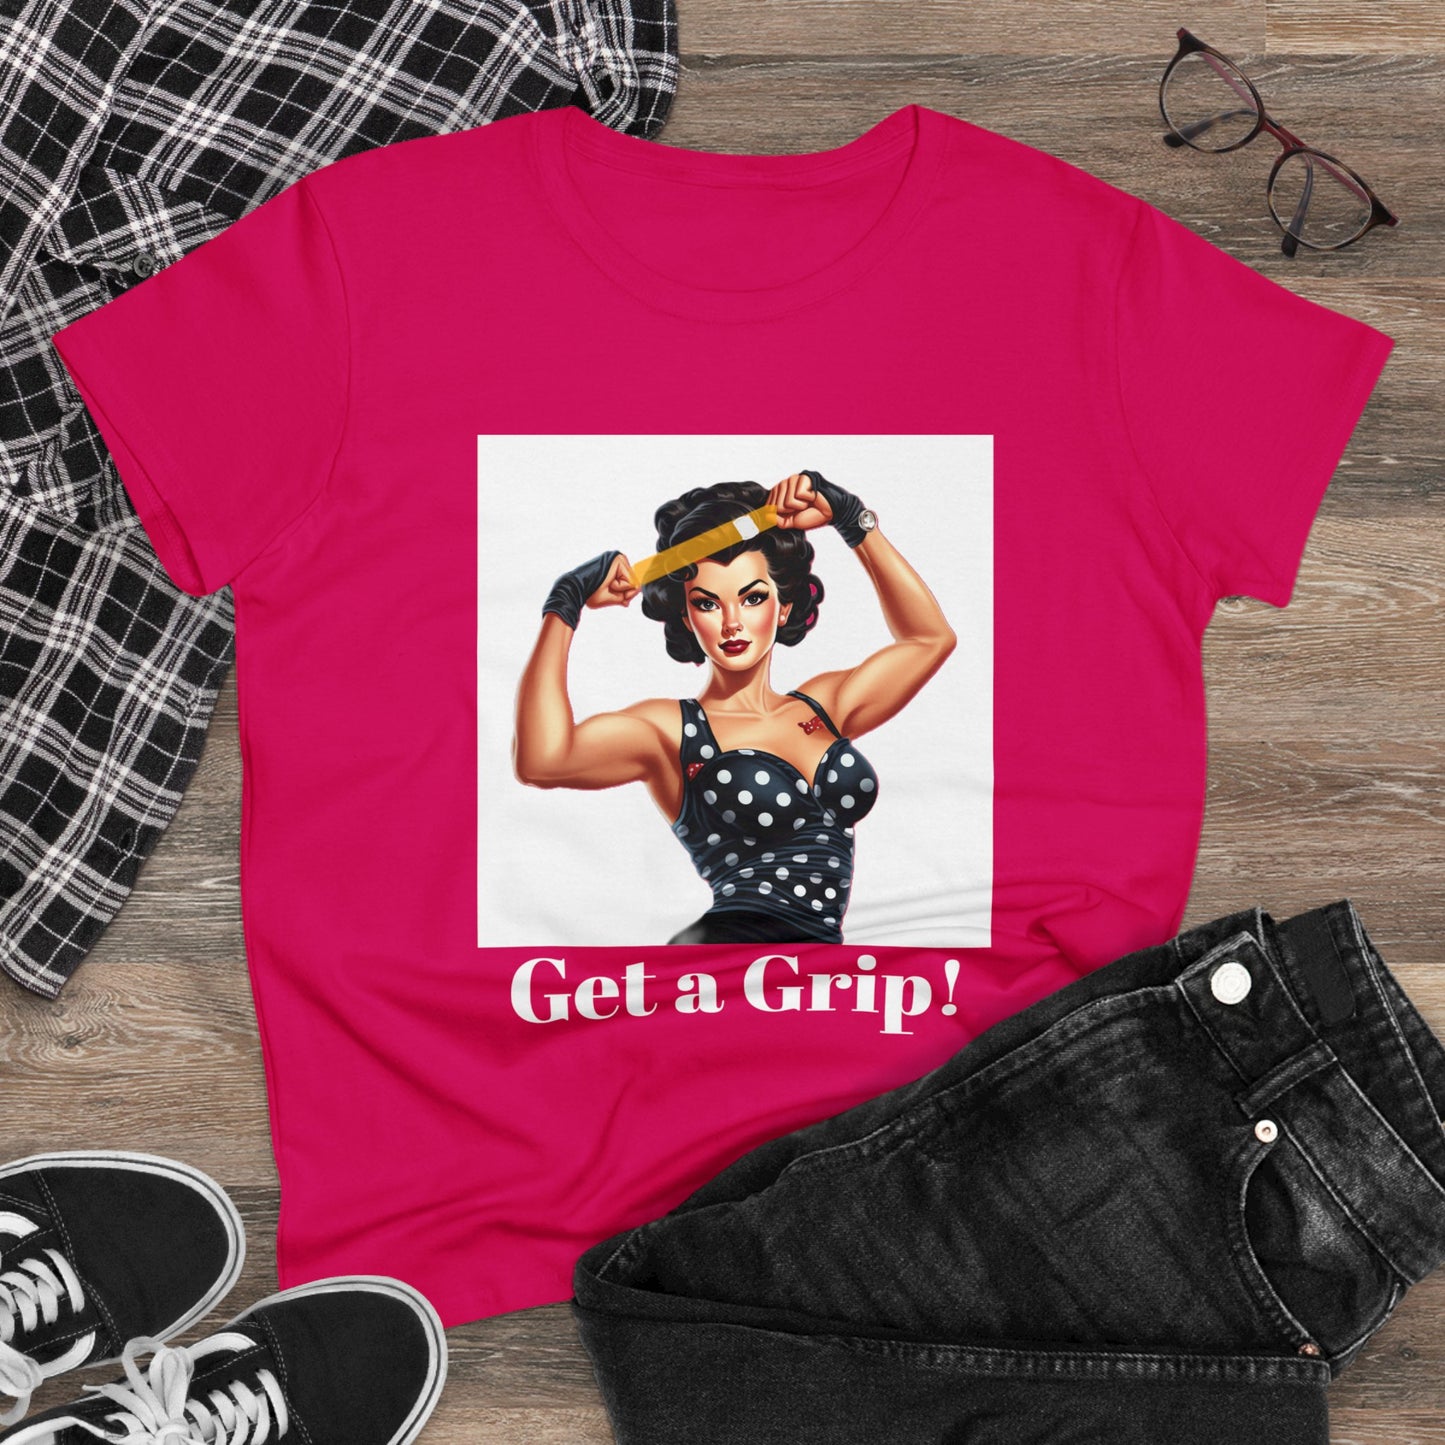 1 Get a Grip! (Women's Midweight Cotton Tee)